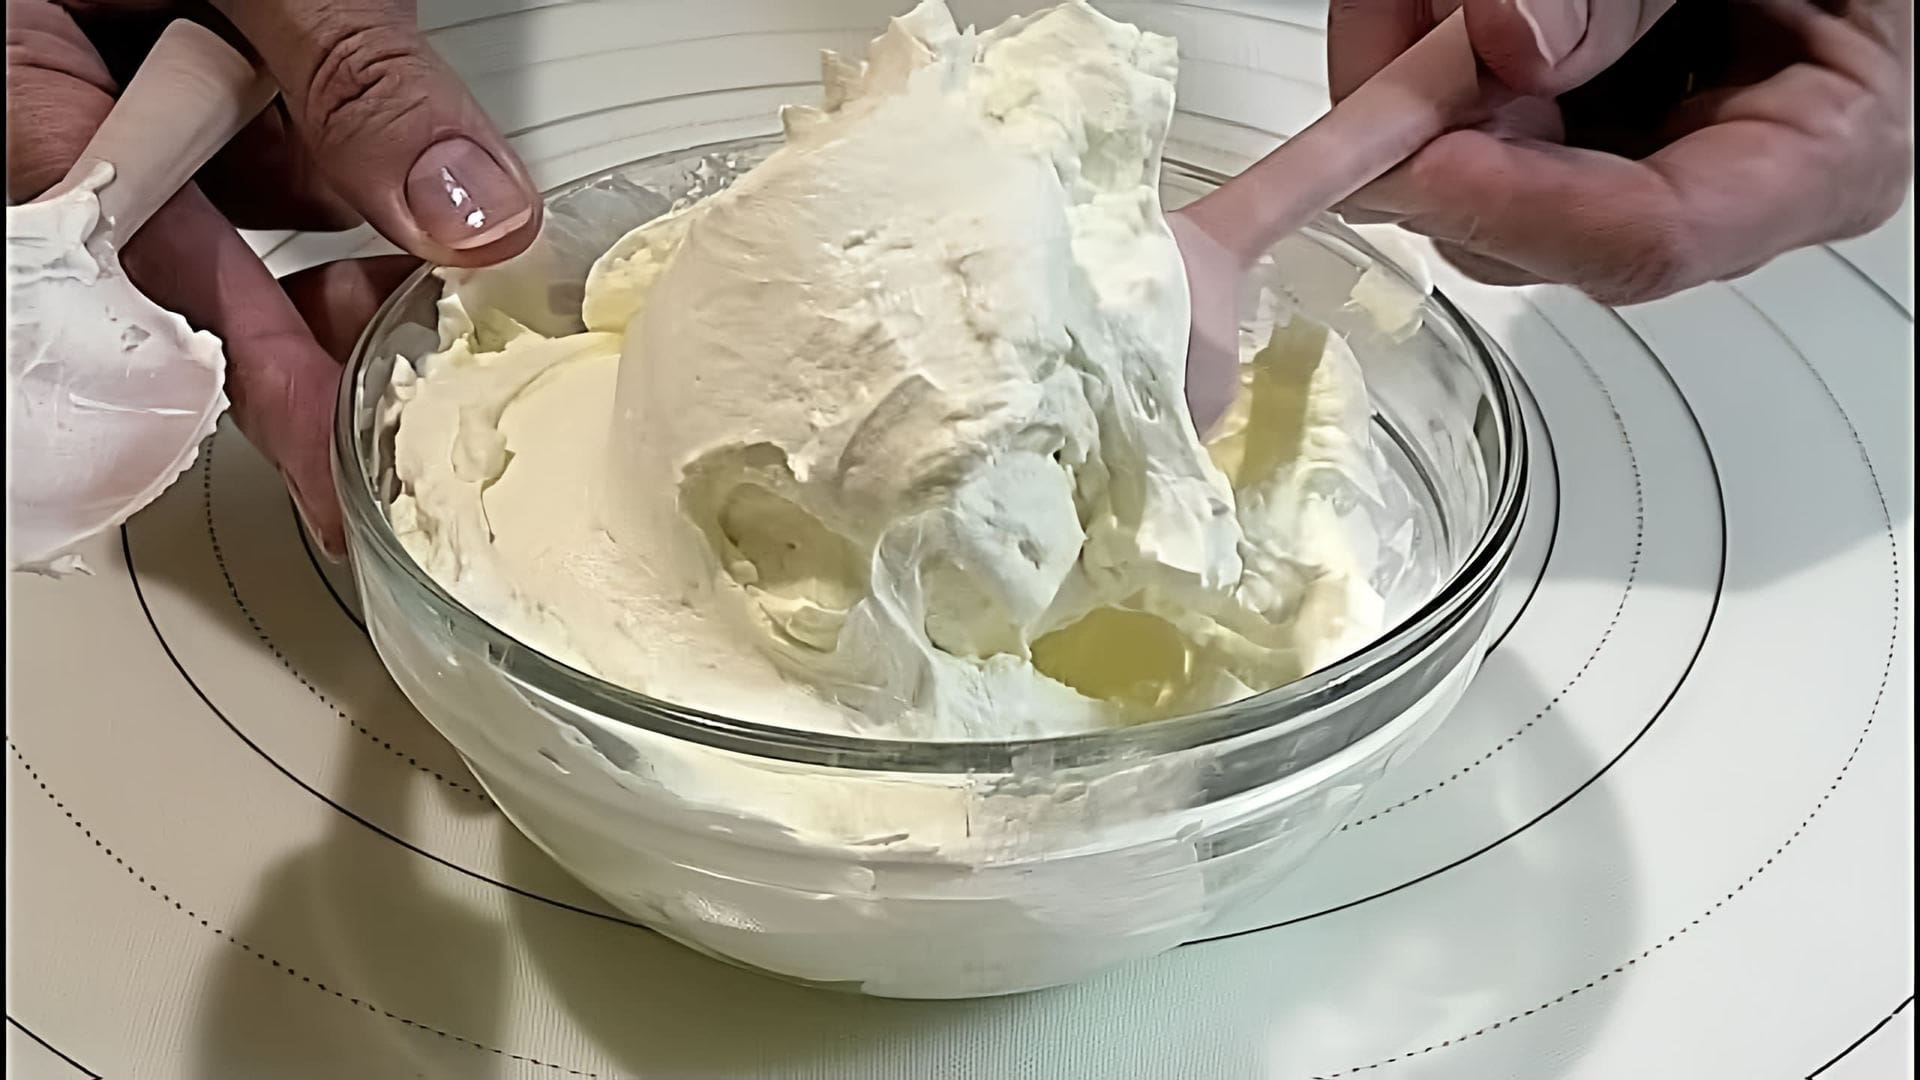 В этом видео демонстрируется рецепт приготовления домашнего сливочного сыра типа Филадельфия